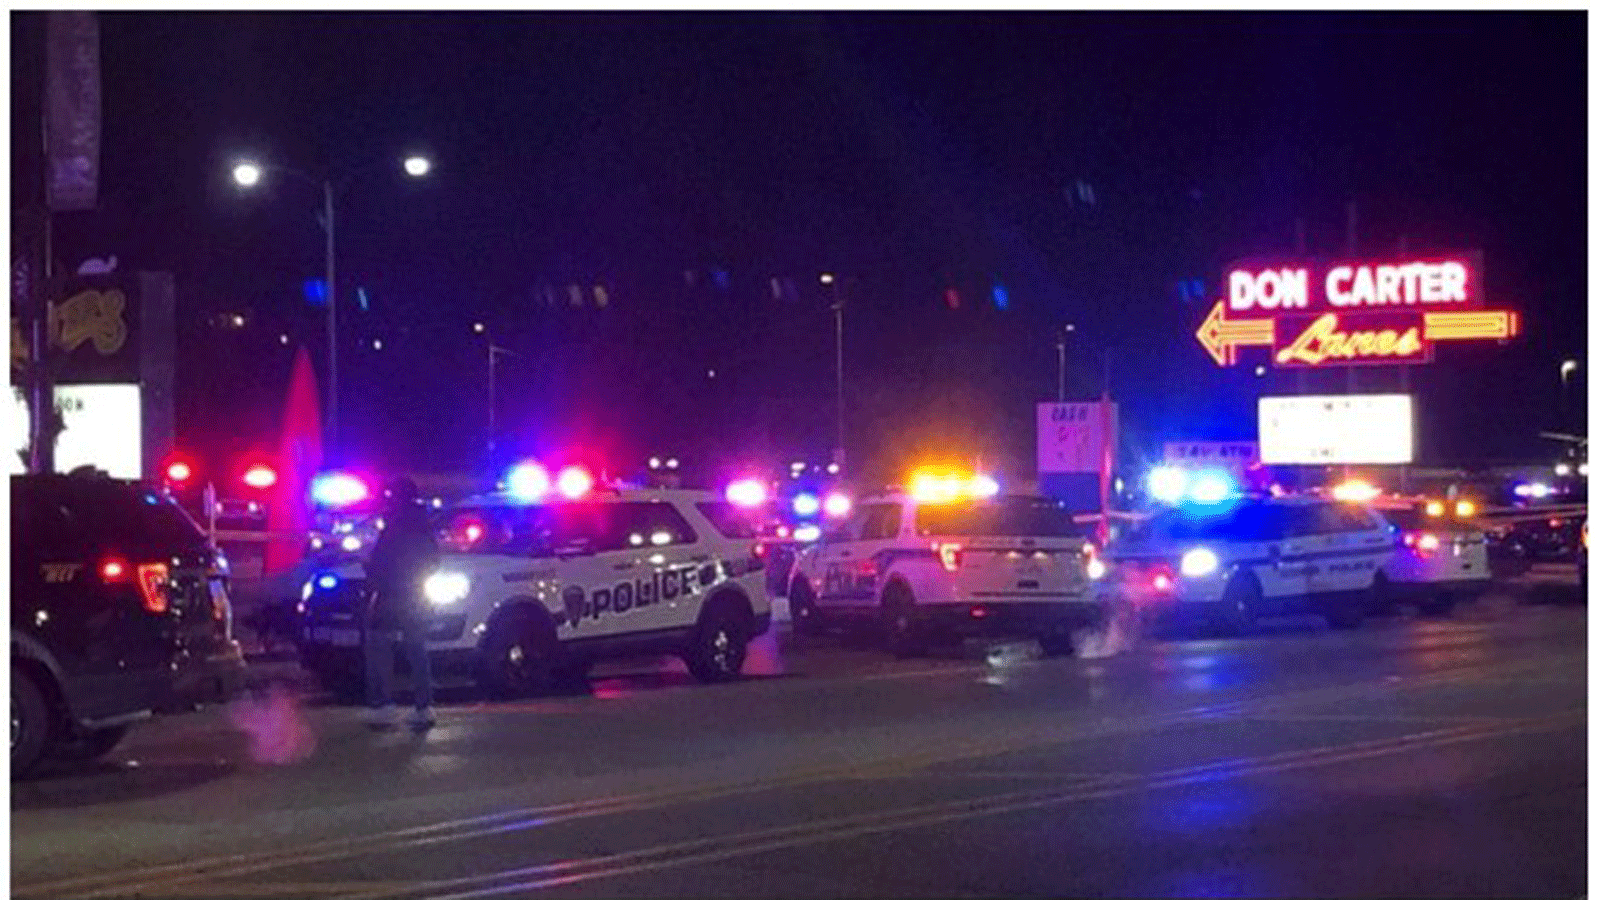 Xe cảnh sát tại khu chơi bowling Don Carter Lanes sau vụ xả súng. Nguồn: ABC NEWS